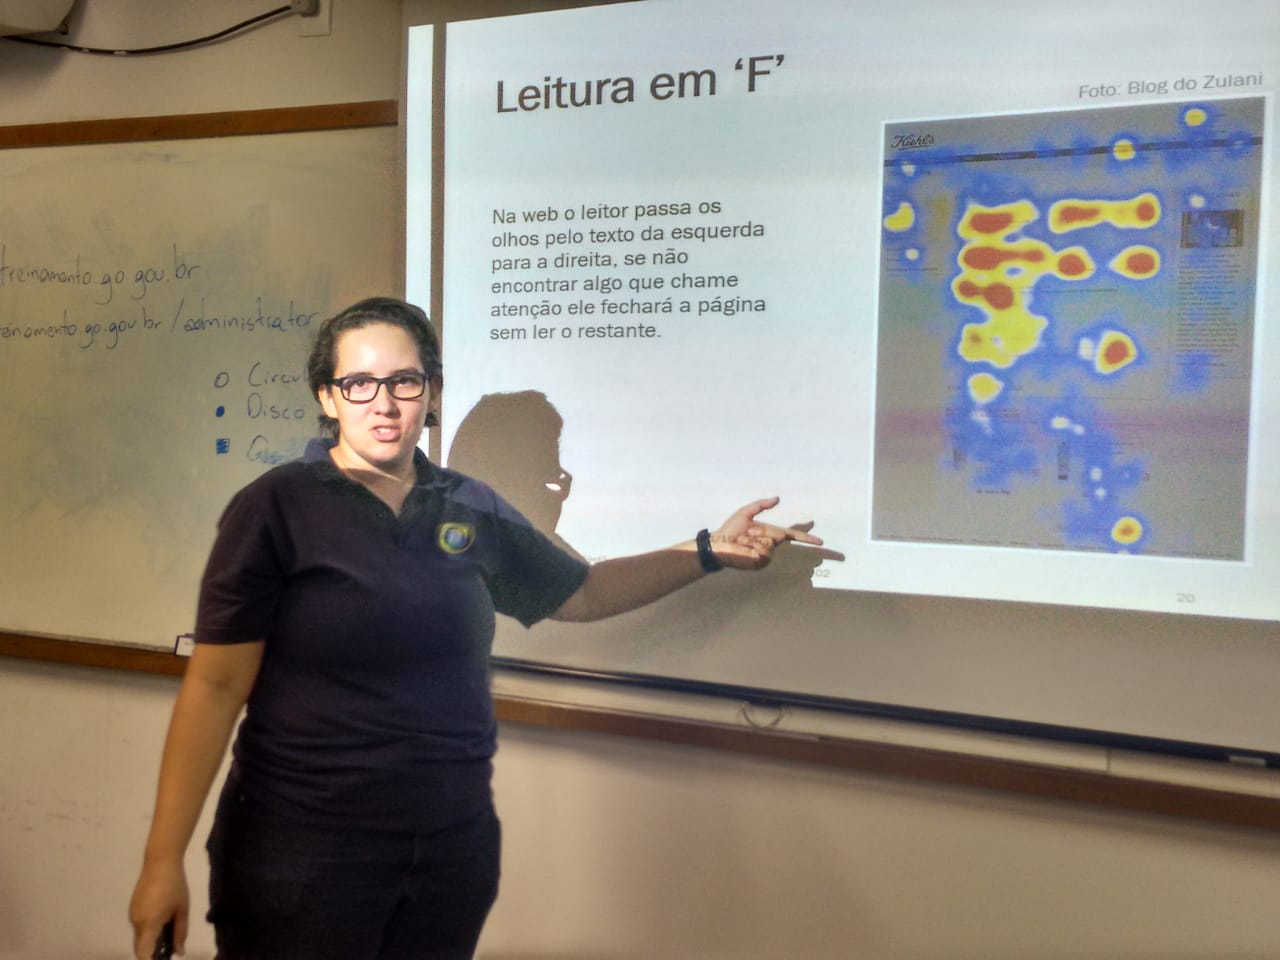 Instrutora Camila Freitas apontando para uma projeção feita pelo datashow no quadro branco. A projeção refere-se à leitura em F.